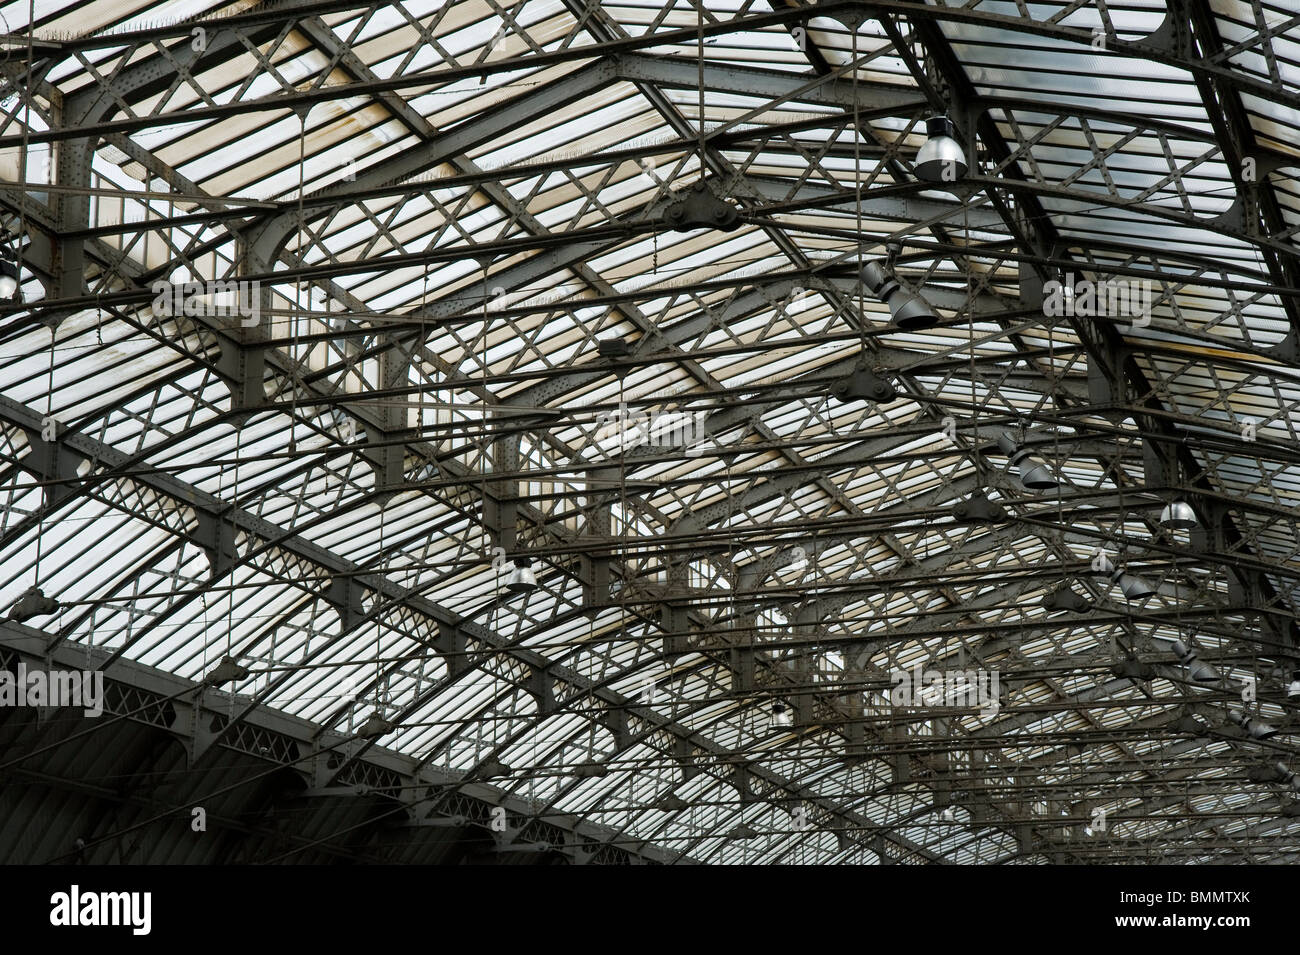 Paris, Gare de l'Est Stock Photo